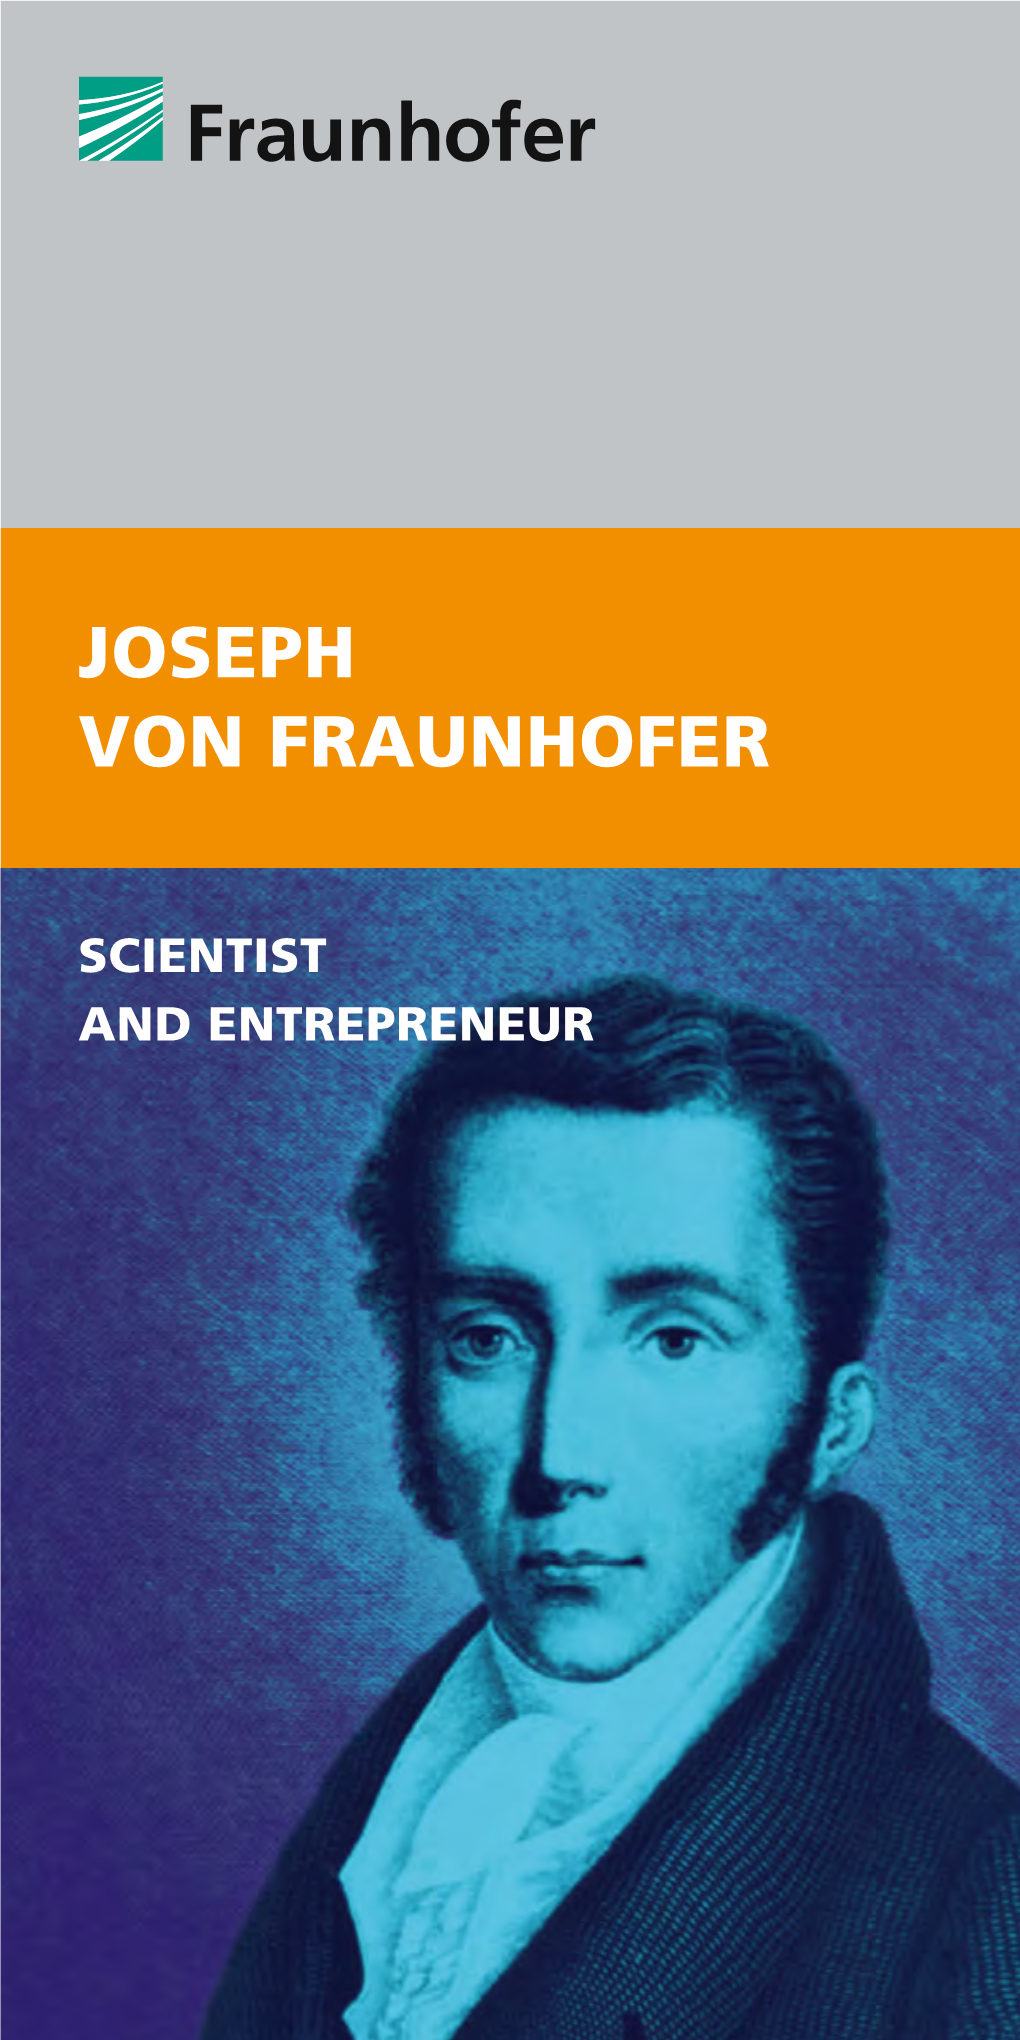 Joseph Von Fraunhofer